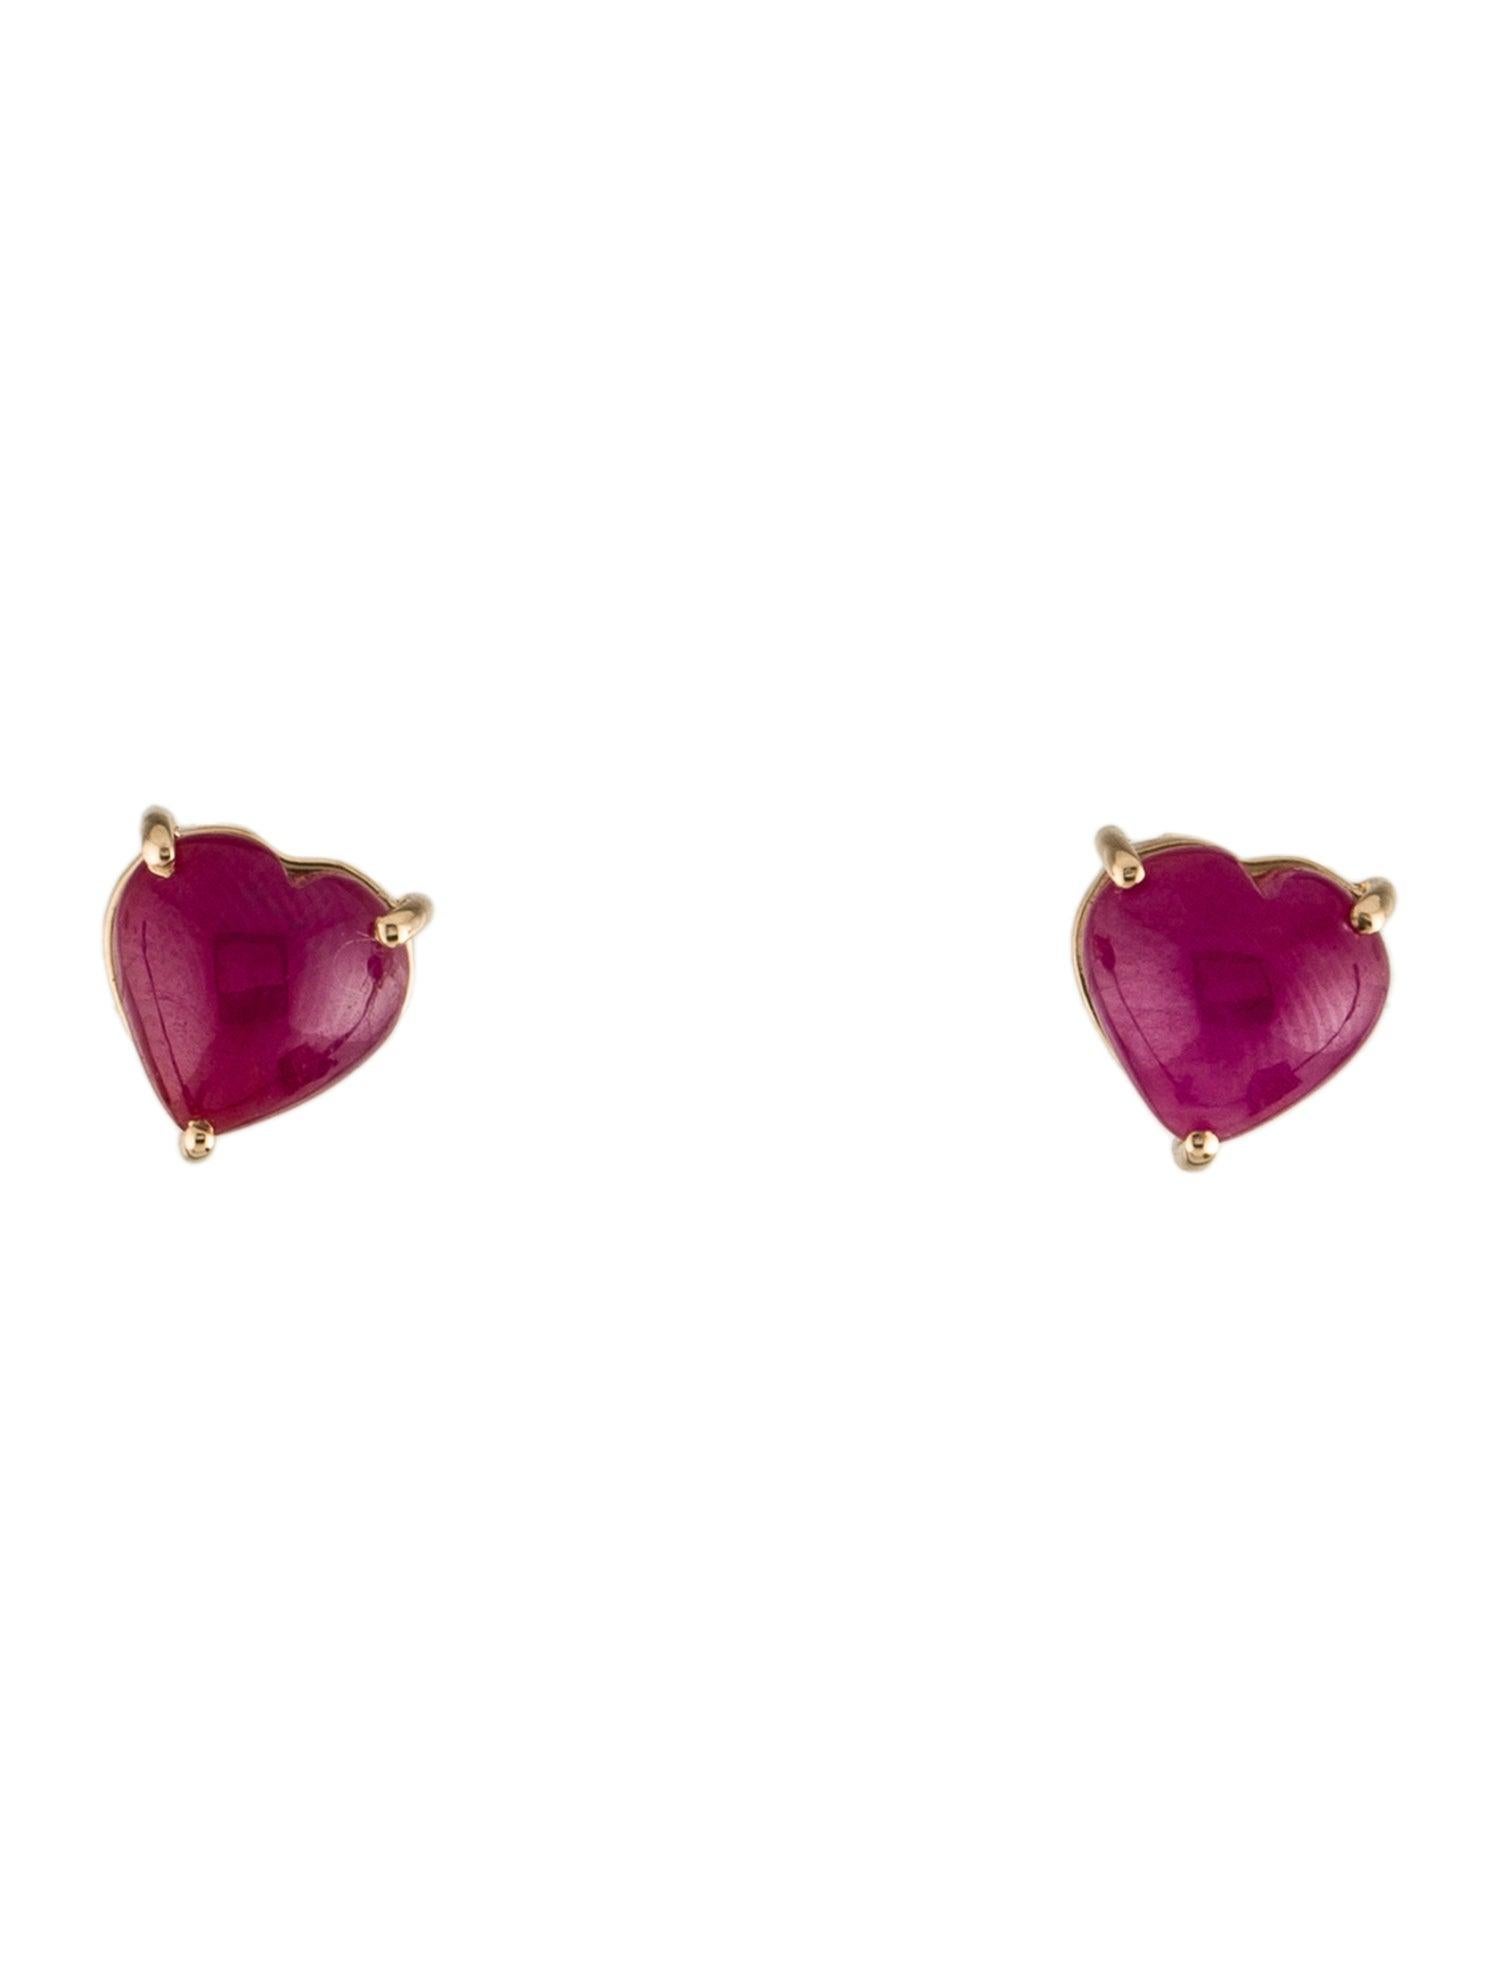 Tauchen Sie ein in die Anziehungskraft unserer Blooms of Passion Ruby Heart Earrings, ein fesselndes Zeugnis für die Verbindung von exquisiter Handwerkskunst und den leuchtenden Farben der Natur. Diese Ohrringe von Jeweltique, einem Namen, der für